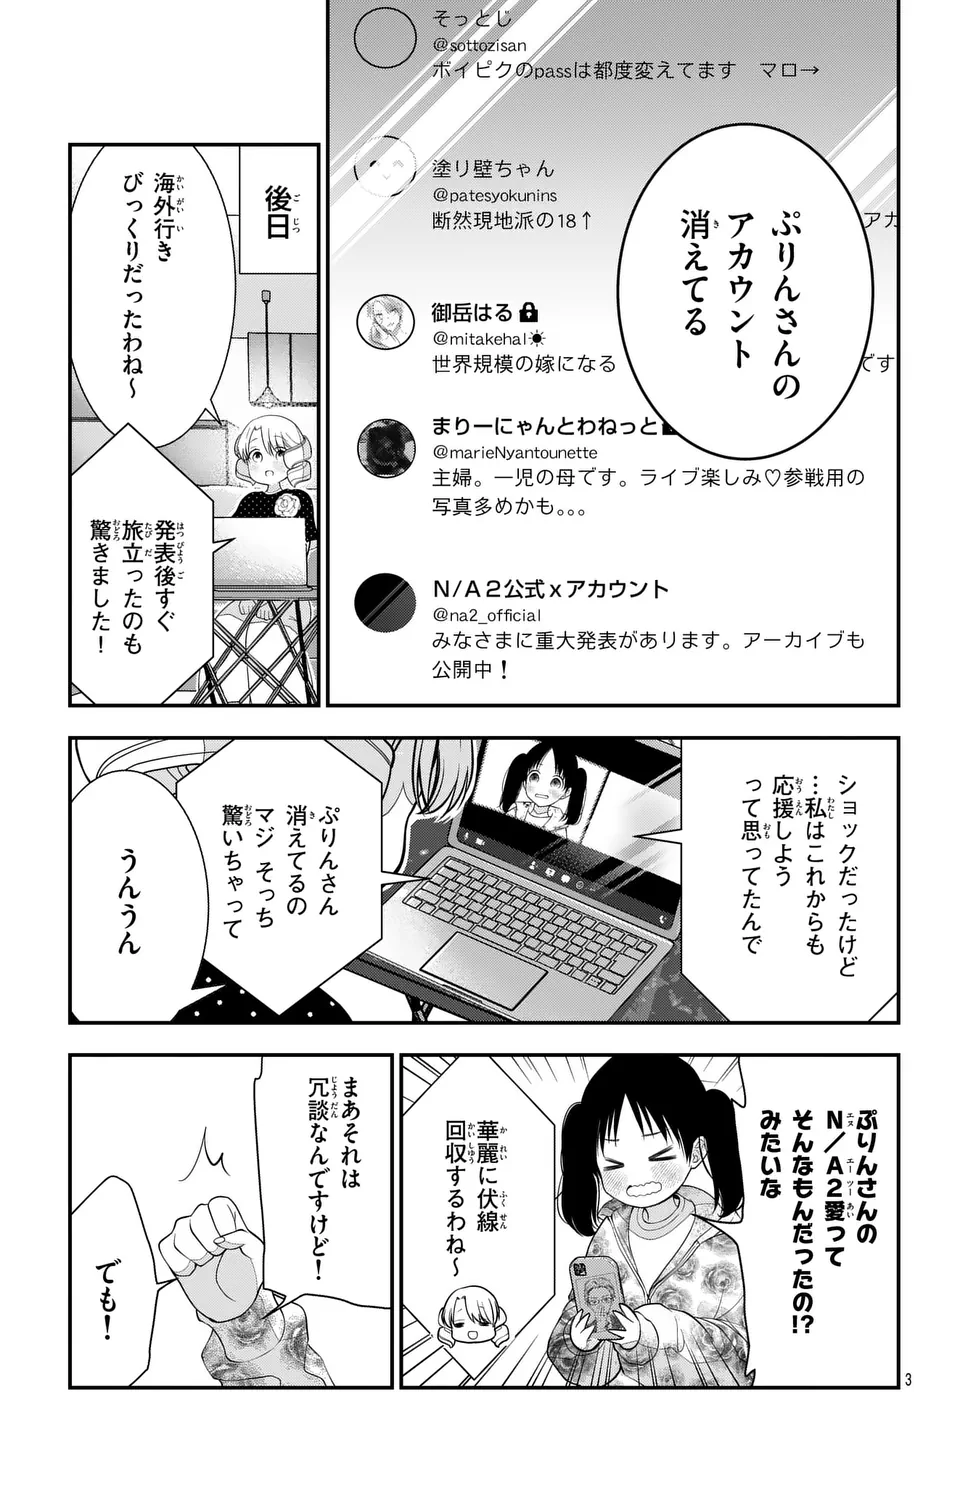 Oshi o Oseru Toki ni Oshitai You ni Osu Off - Chapter 18_End - Page 3